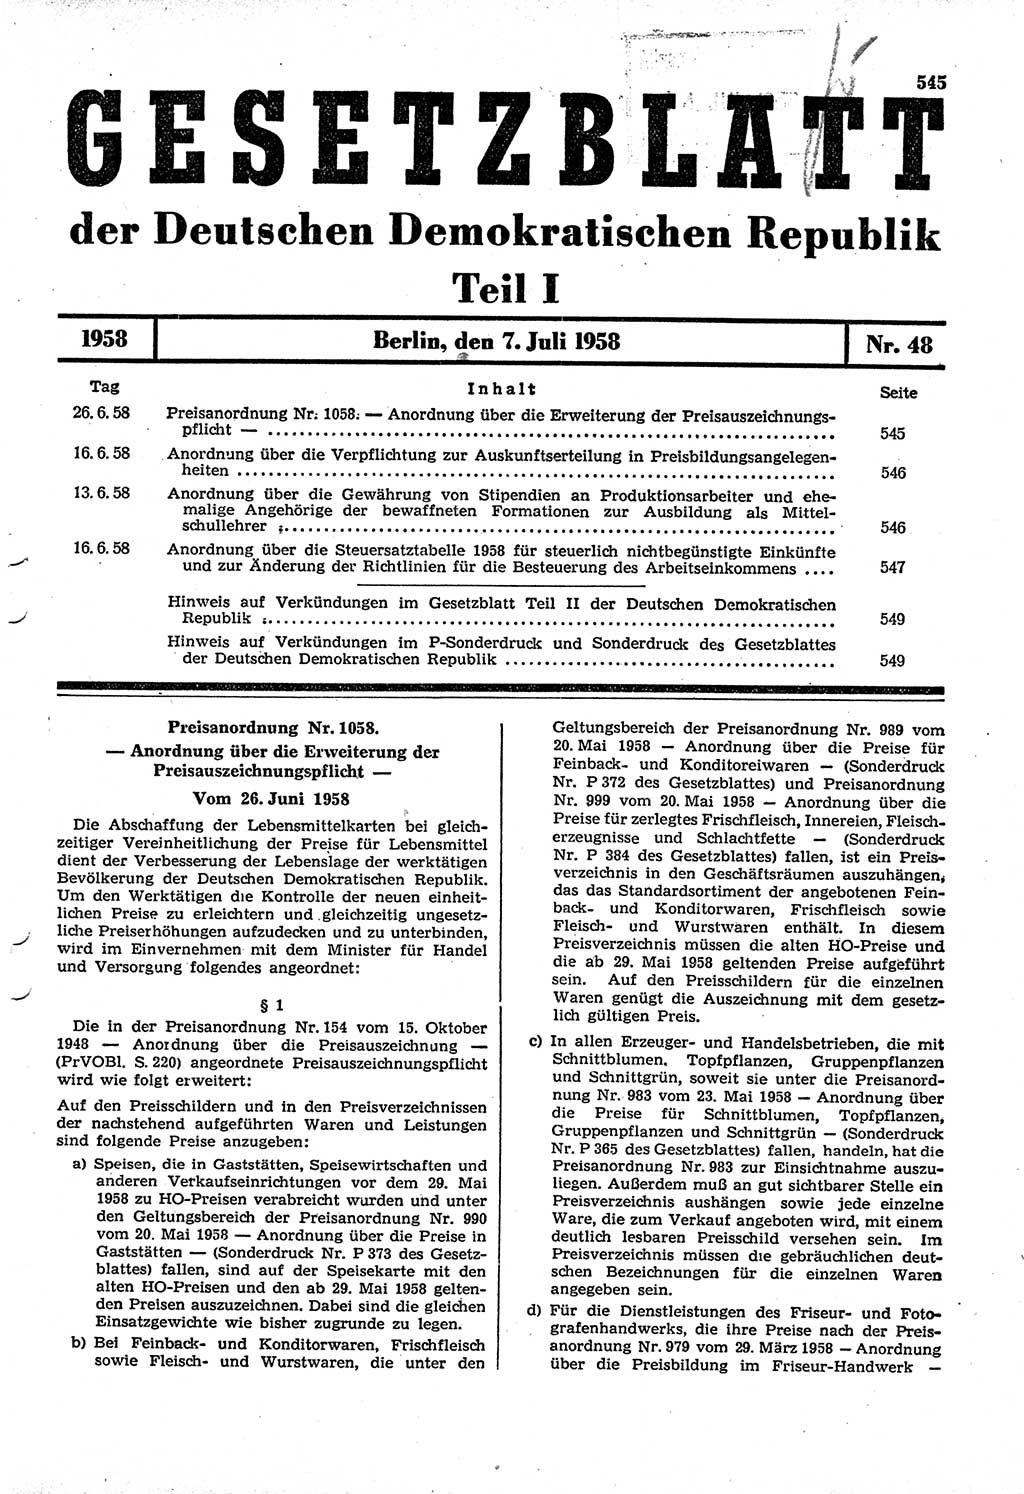 Gesetzblatt (GBl.) der Deutschen Demokratischen Republik (DDR) Teil Ⅰ 1958, Seite 545 (GBl. DDR Ⅰ 1958, S. 545)